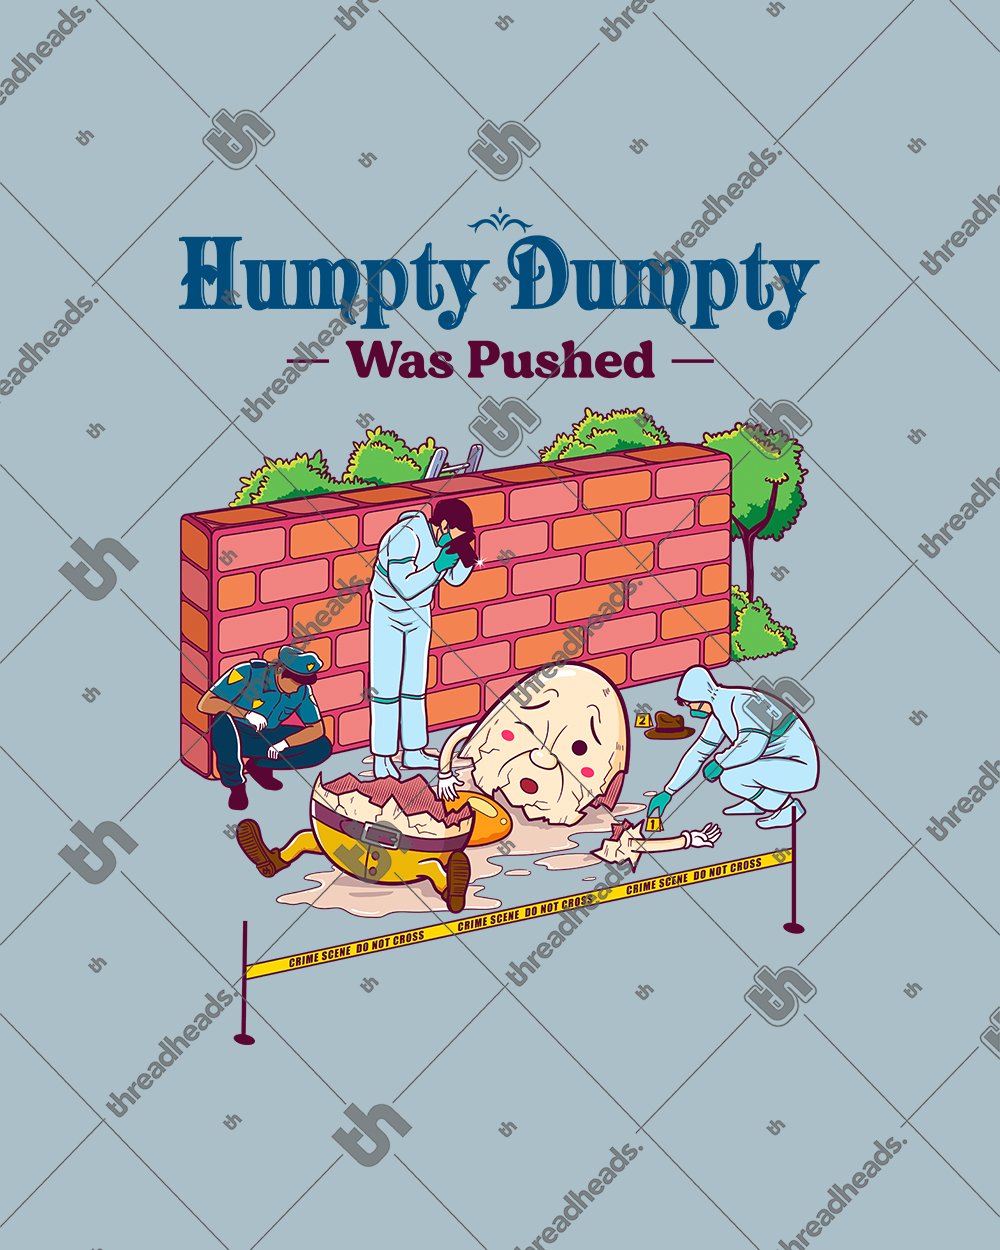 Humpty Dumpty was Pushed T-Shirt Australia Online #colour_pale blue